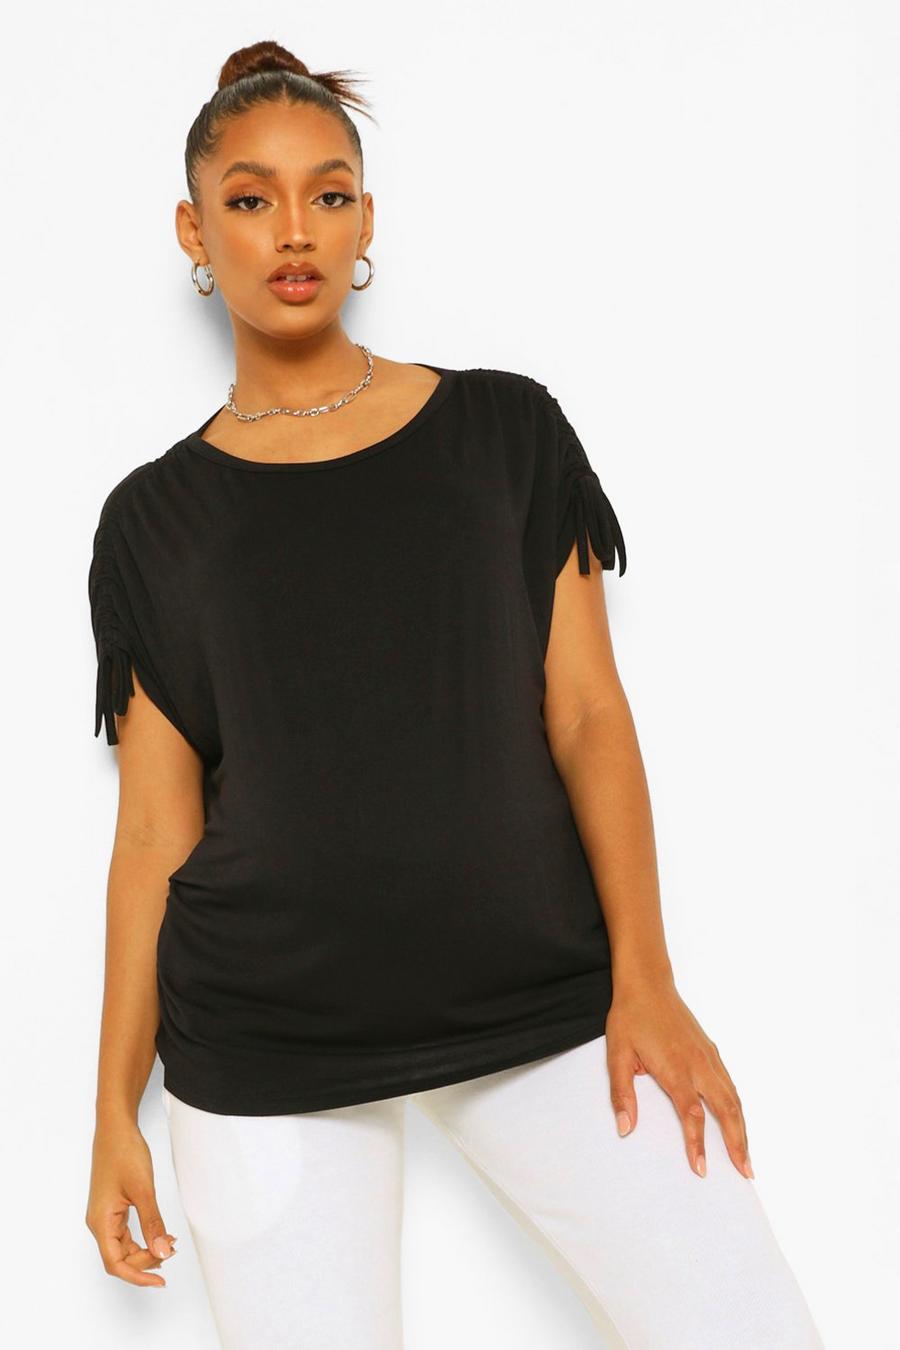 שחור טישרט בסגנון משוחרר עם קפלים בשרוולים בגדי היריון image number 1